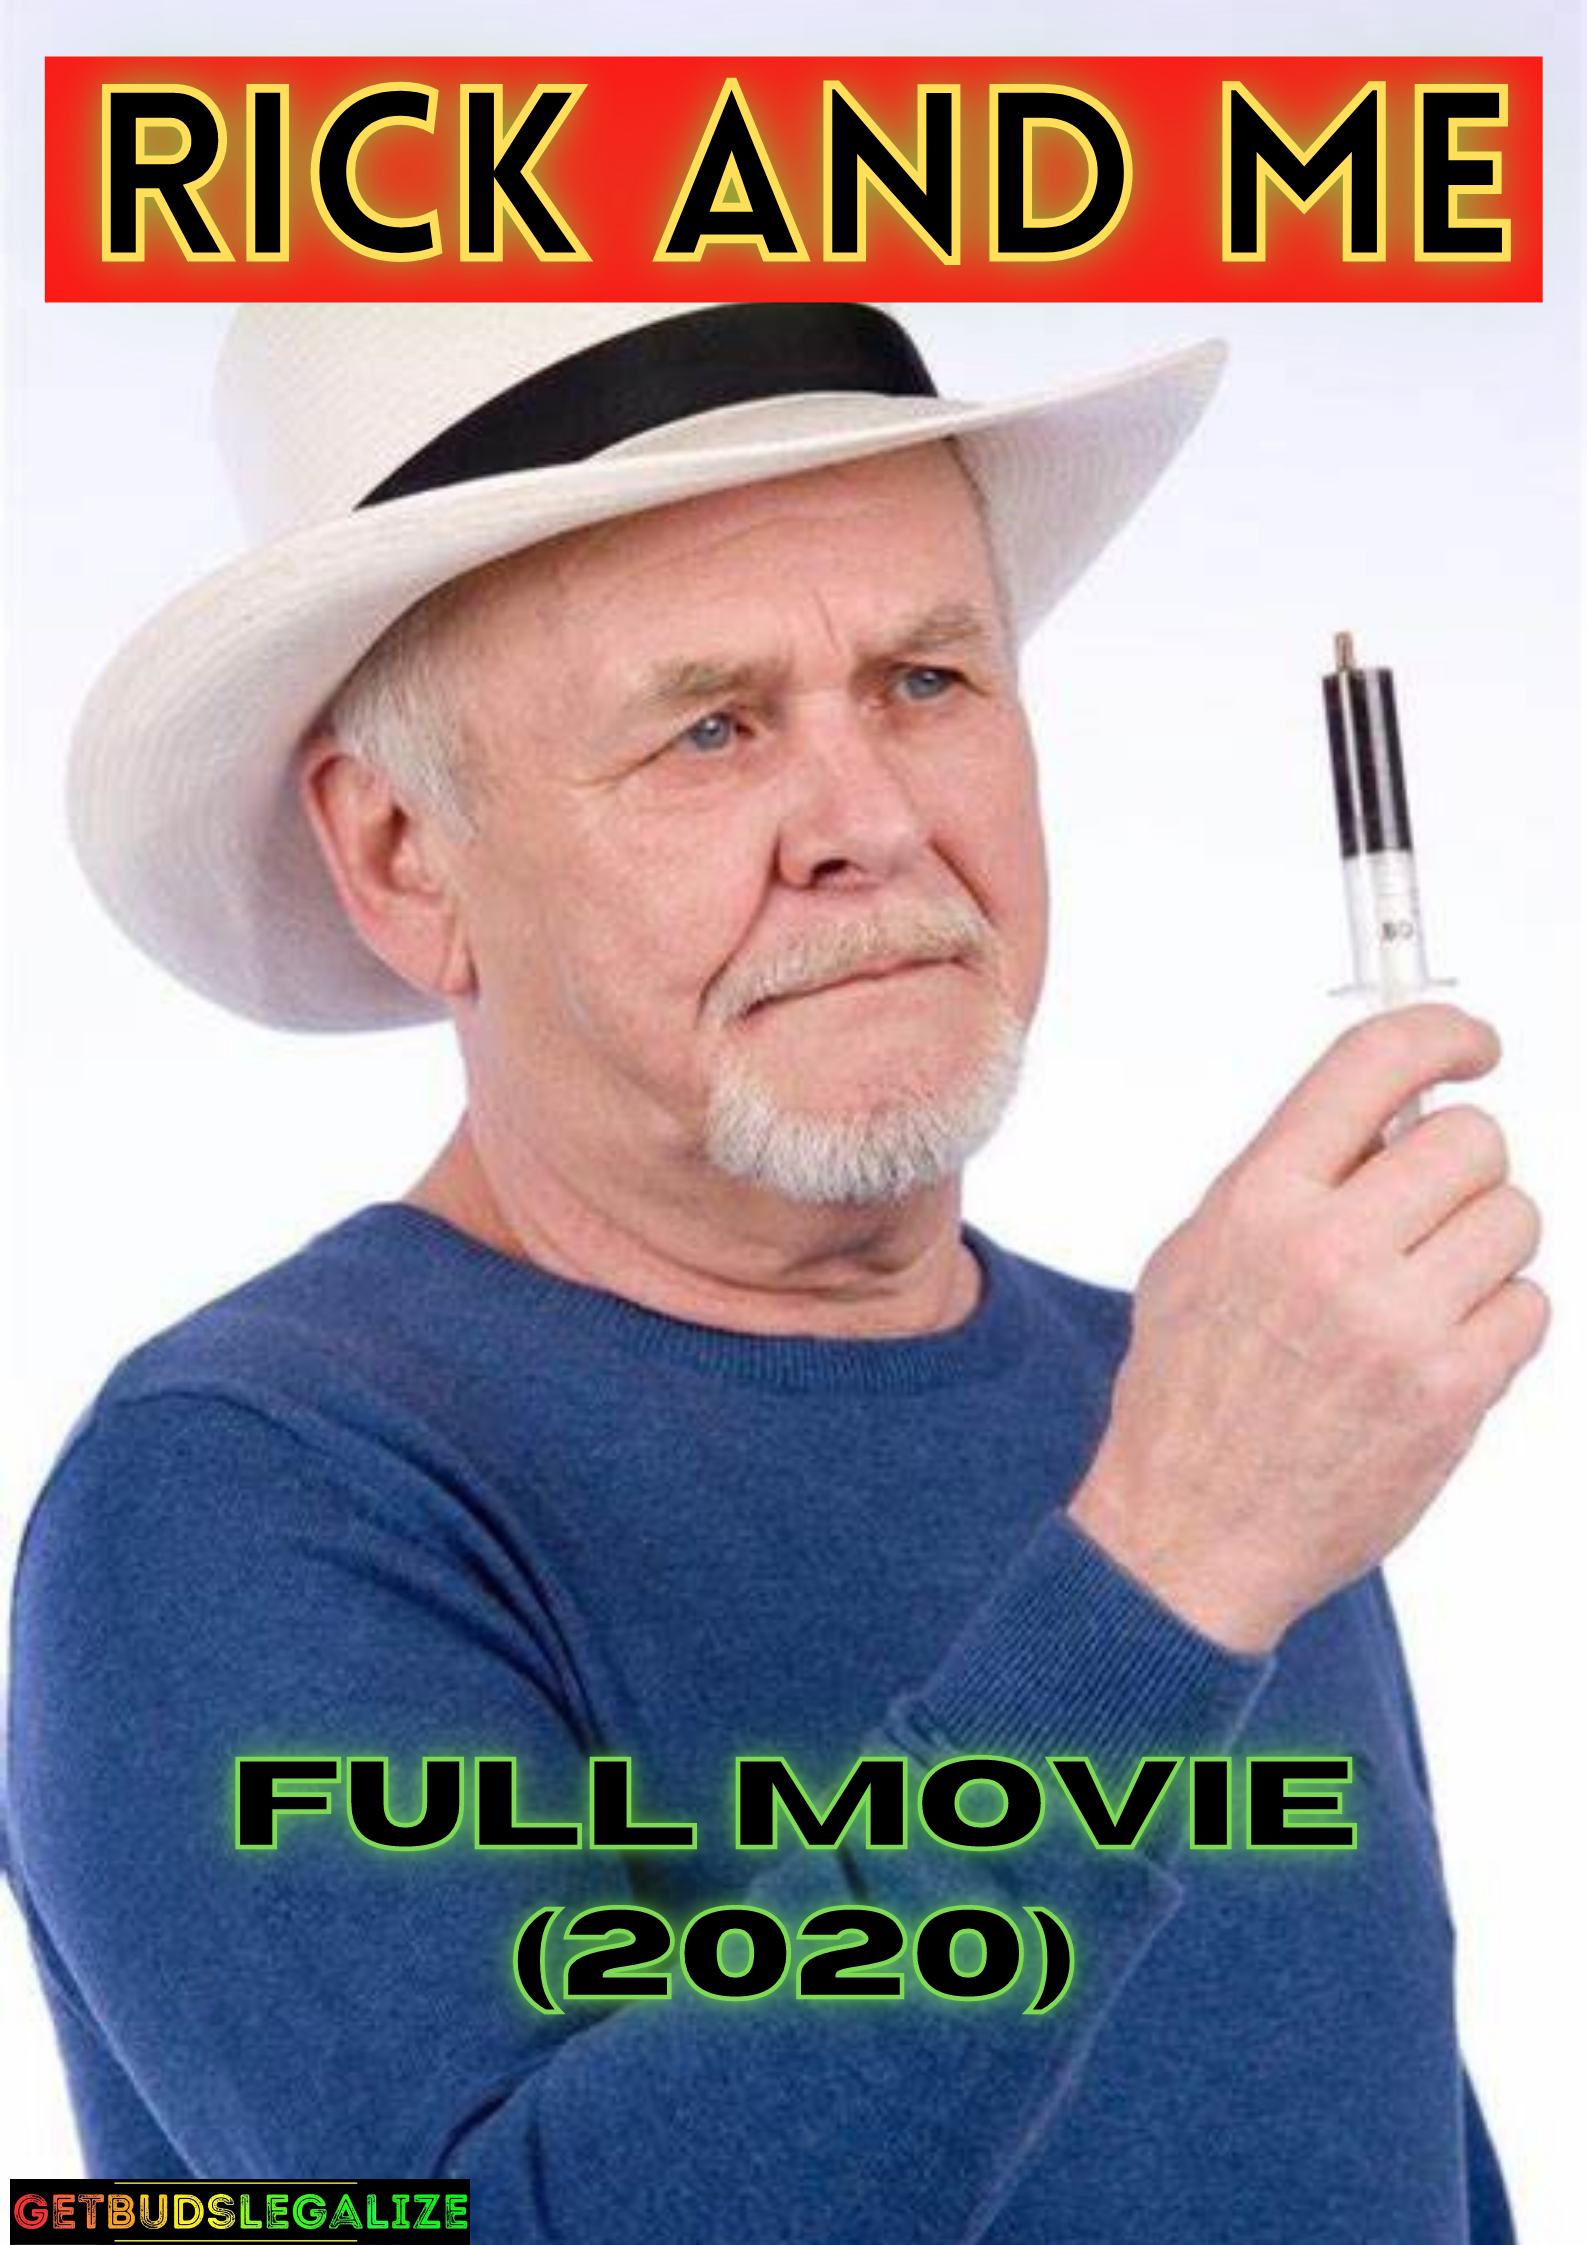 Rick and Me (2020) Full Movie, cannabis, movie, marijuana, weed, pot, documentary